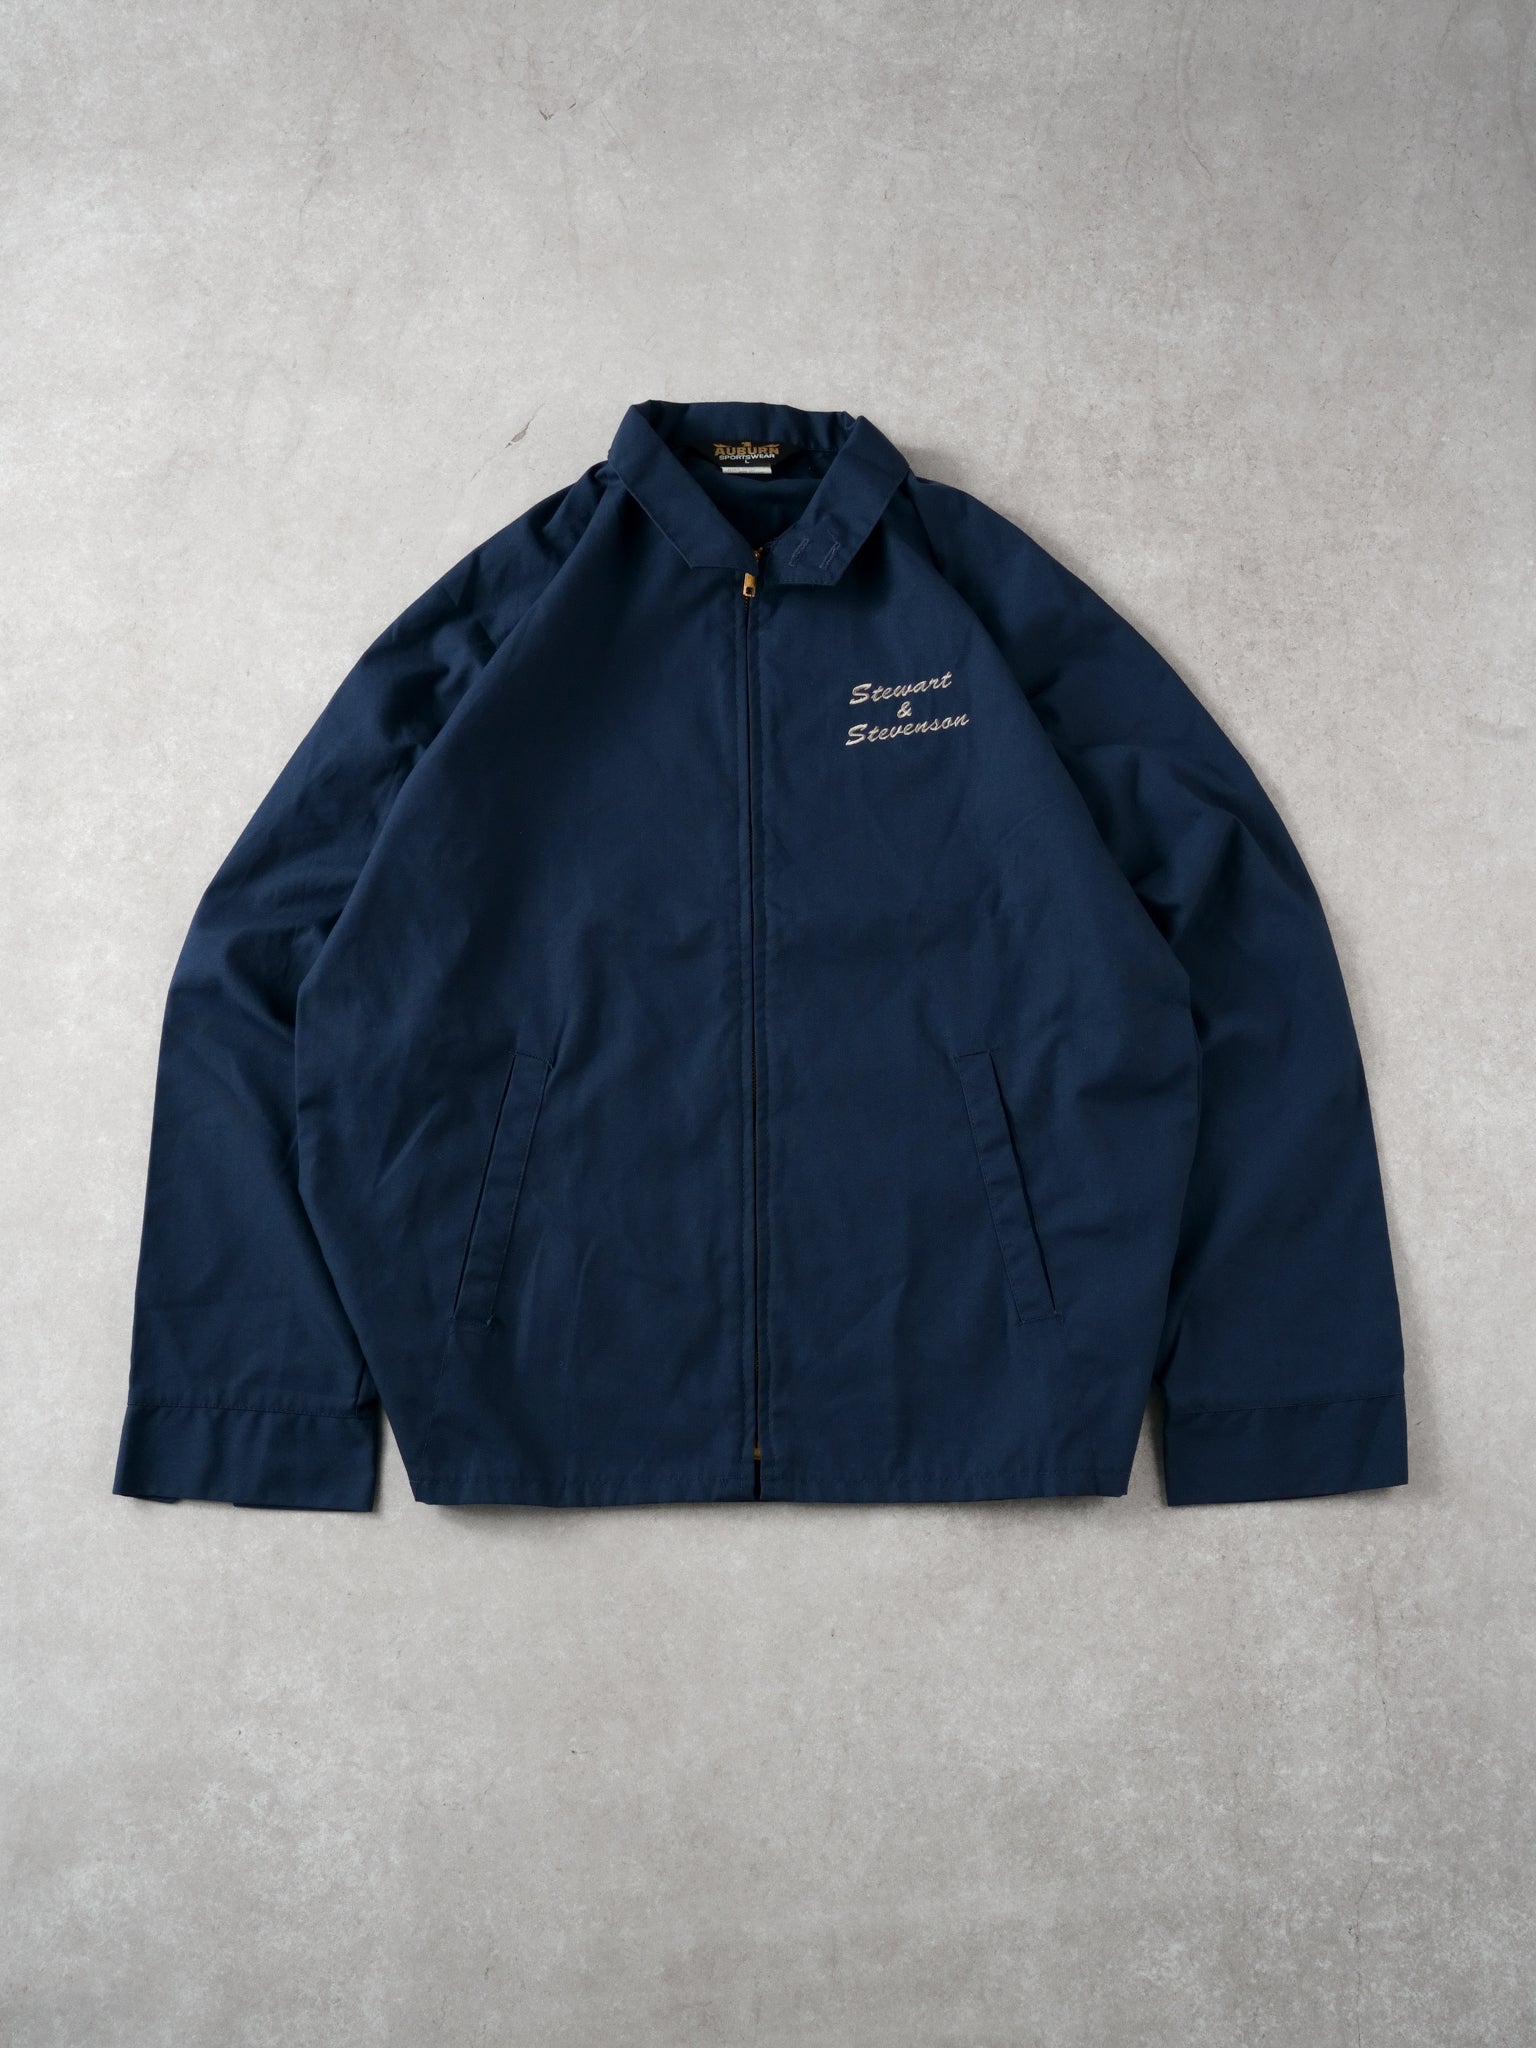 Vintage 90s Navy Blue Stewart & Stevenson Collared Jacket (M)